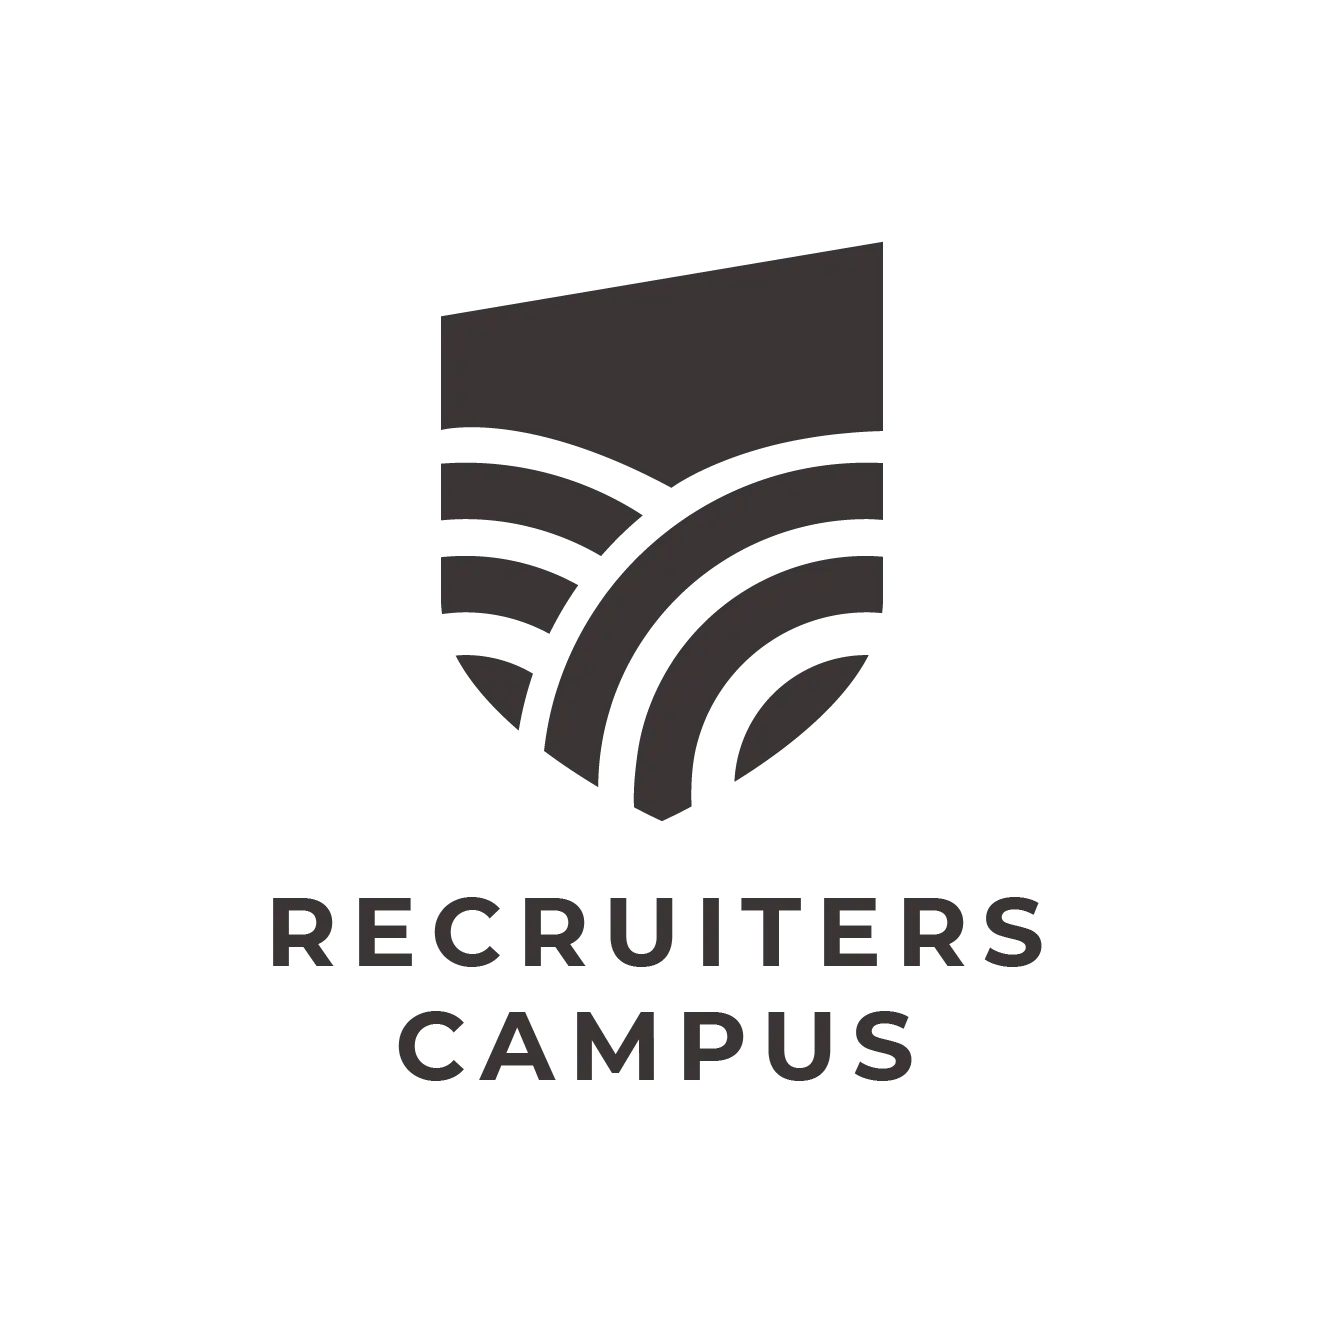 recruiters campus logo